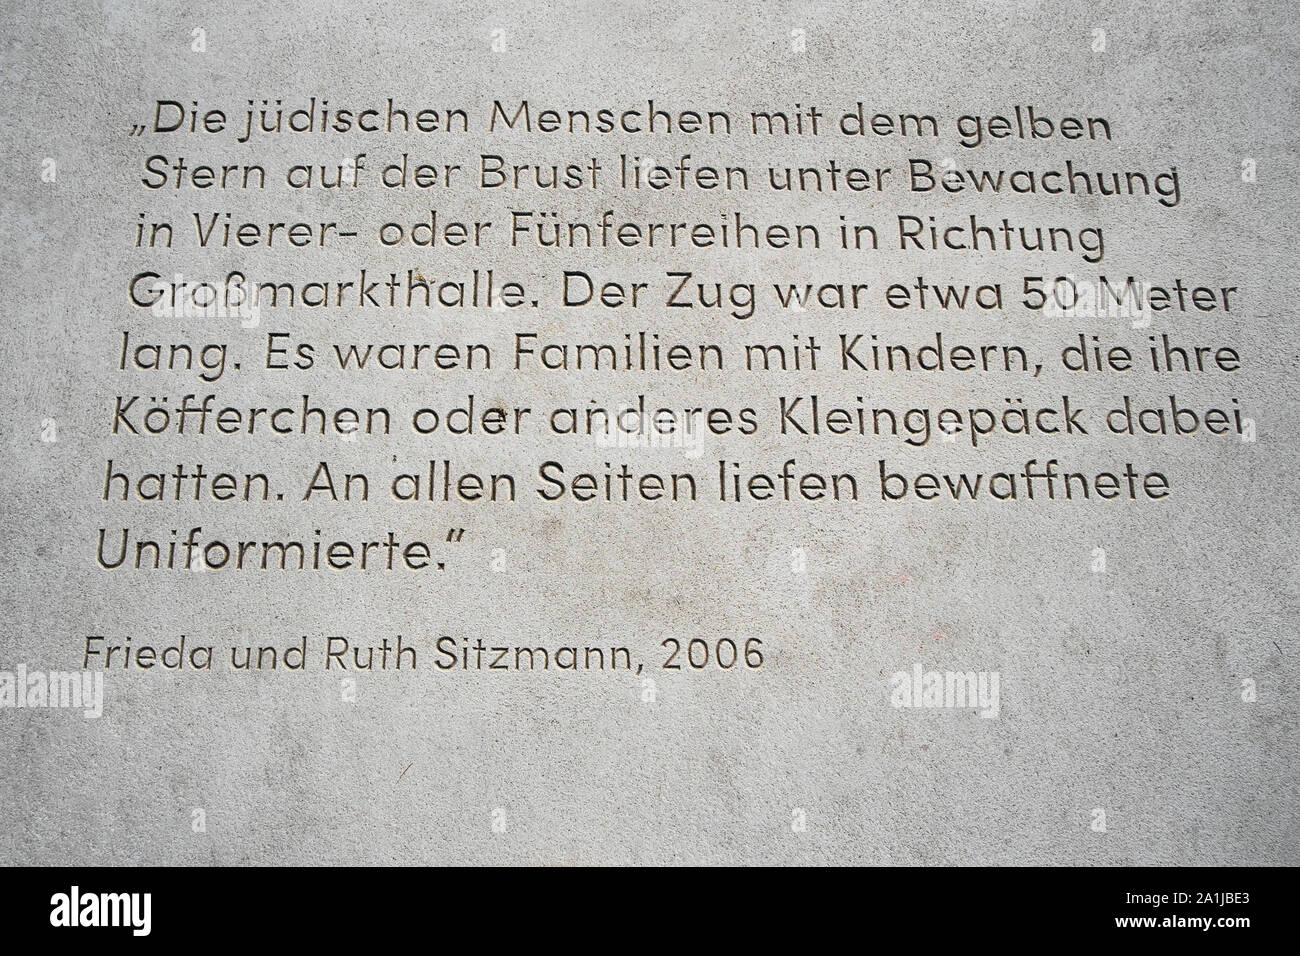 Iscrizione sul sentiero presso il memorial grossmarkthalle/Banca centrale europea la commemorazione della deportazione dei cittadini ebrei Foto Stock